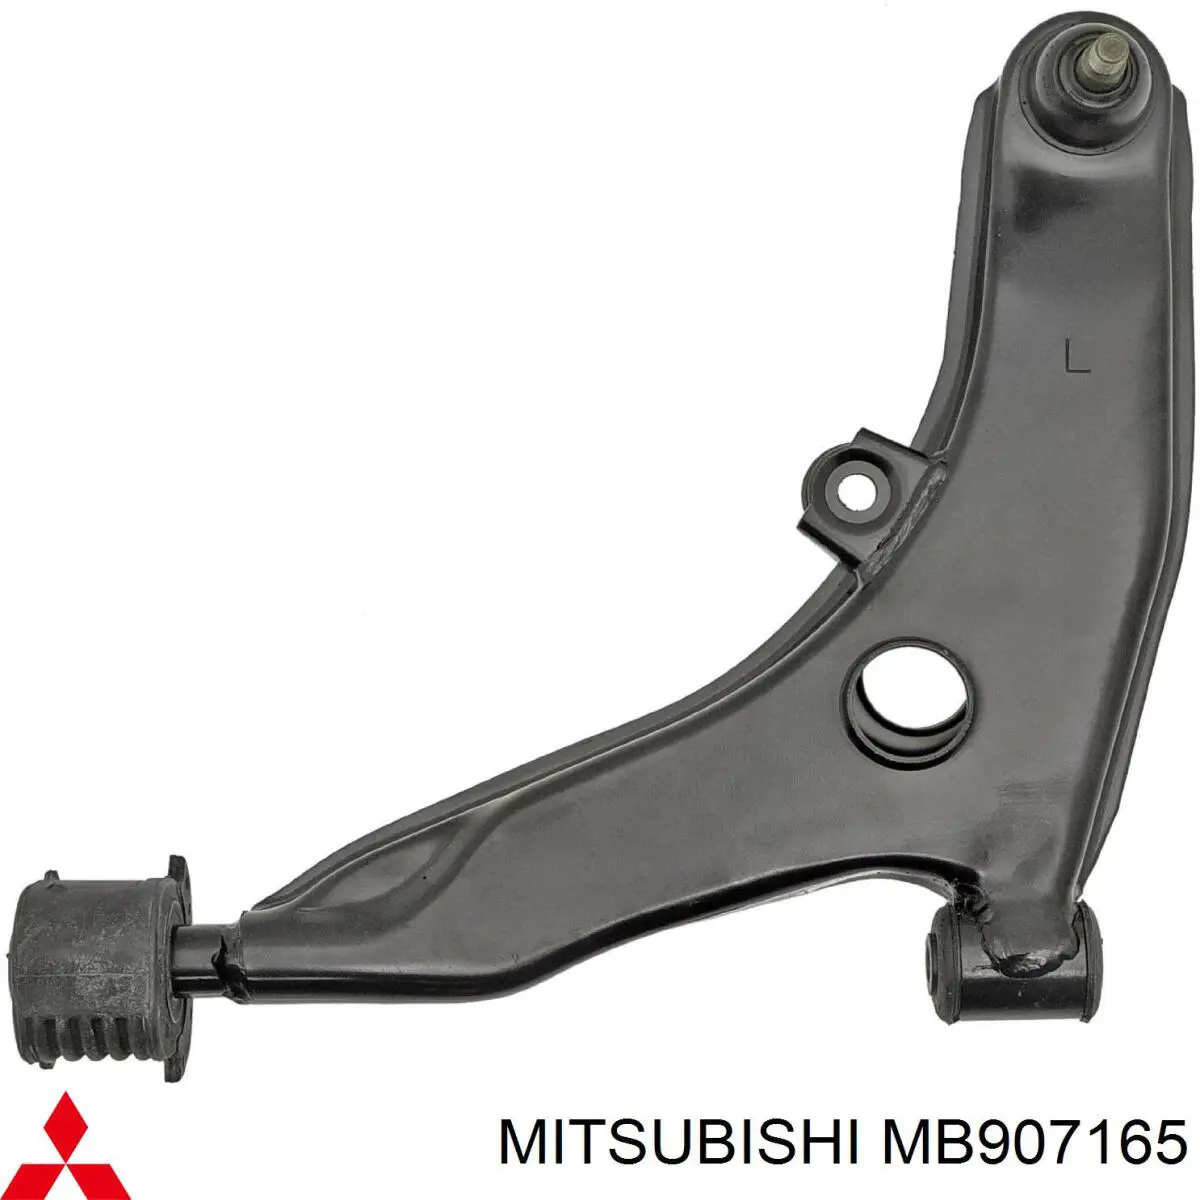 MB907165 Mitsubishi barra oscilante, suspensión de ruedas delantera, inferior izquierda